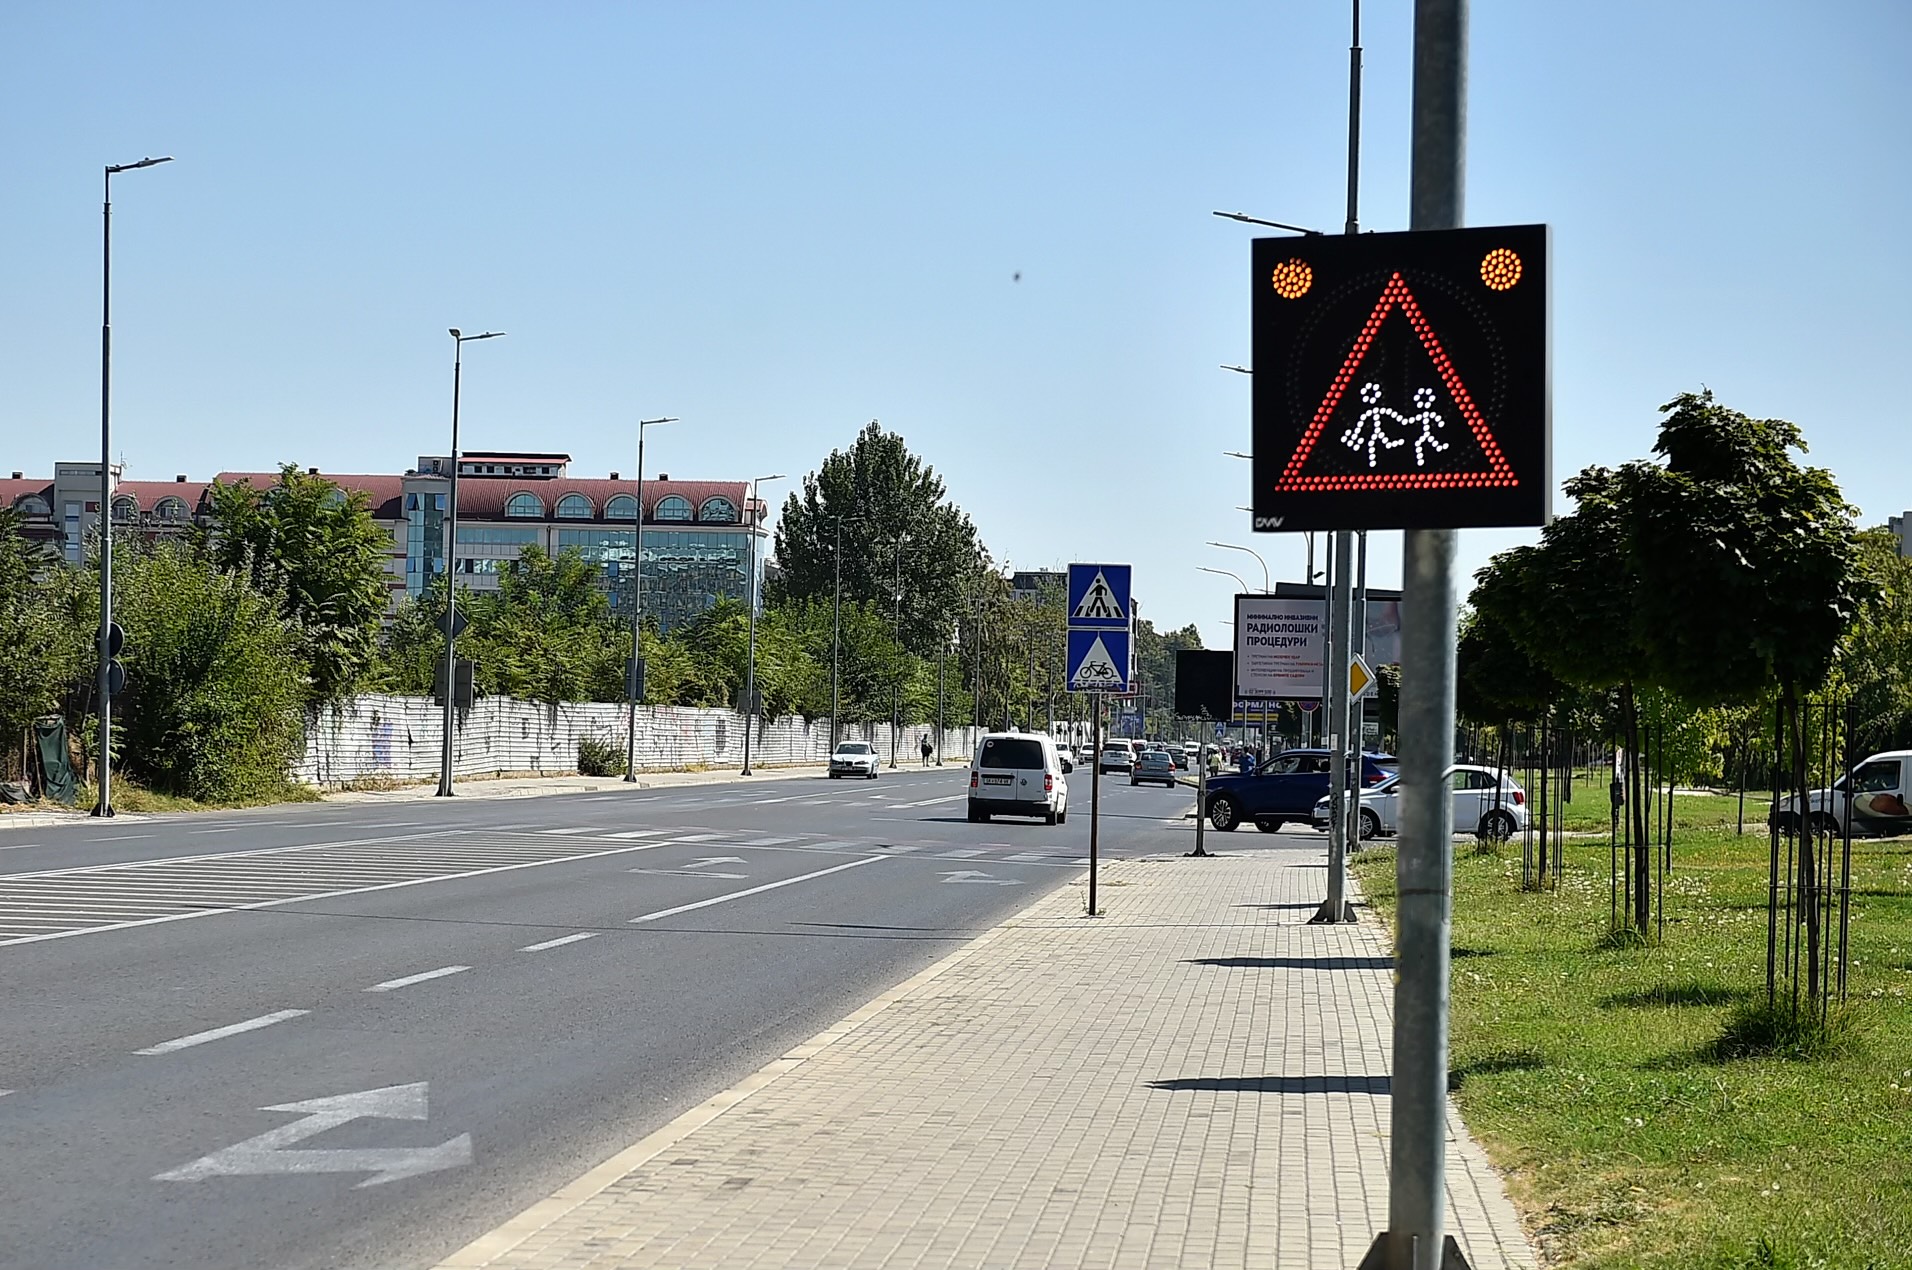 Модерно Скопје“ со нови знаци и „ЛЕД“ светла за поголема безбедност